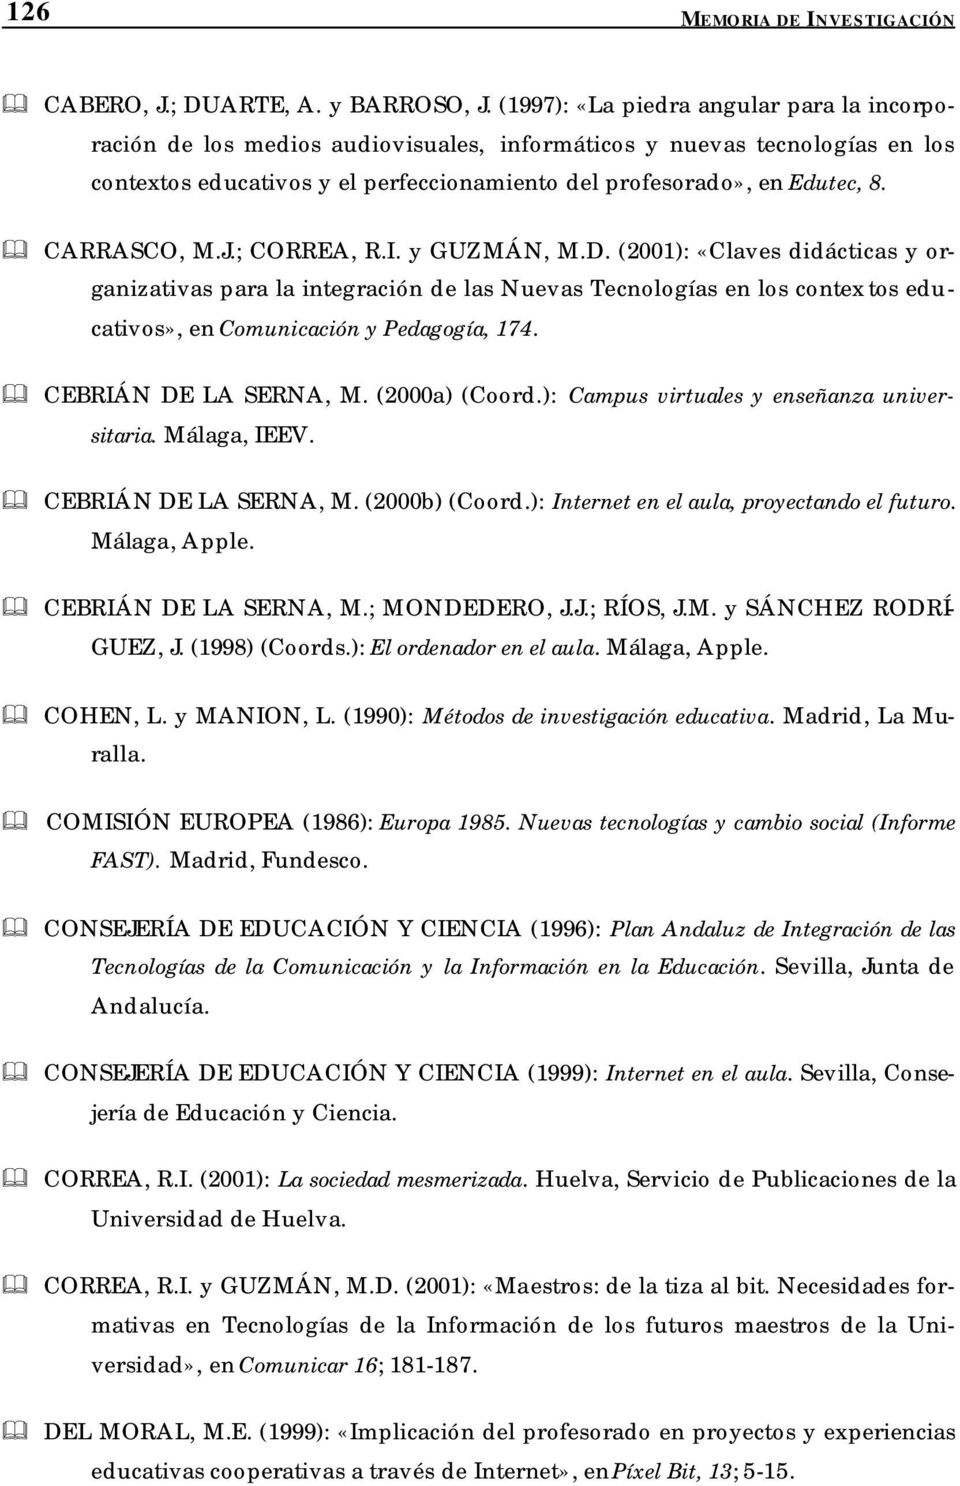 CARRASCO, M.J.; CORREA, R.I. y GUZMÁN, M.D. (2001): «Claves didácticas y organizativas para la integración de las Nuevas Tecnologías en los contex tos educativos», en Comunicación y Pedagogía, 174.